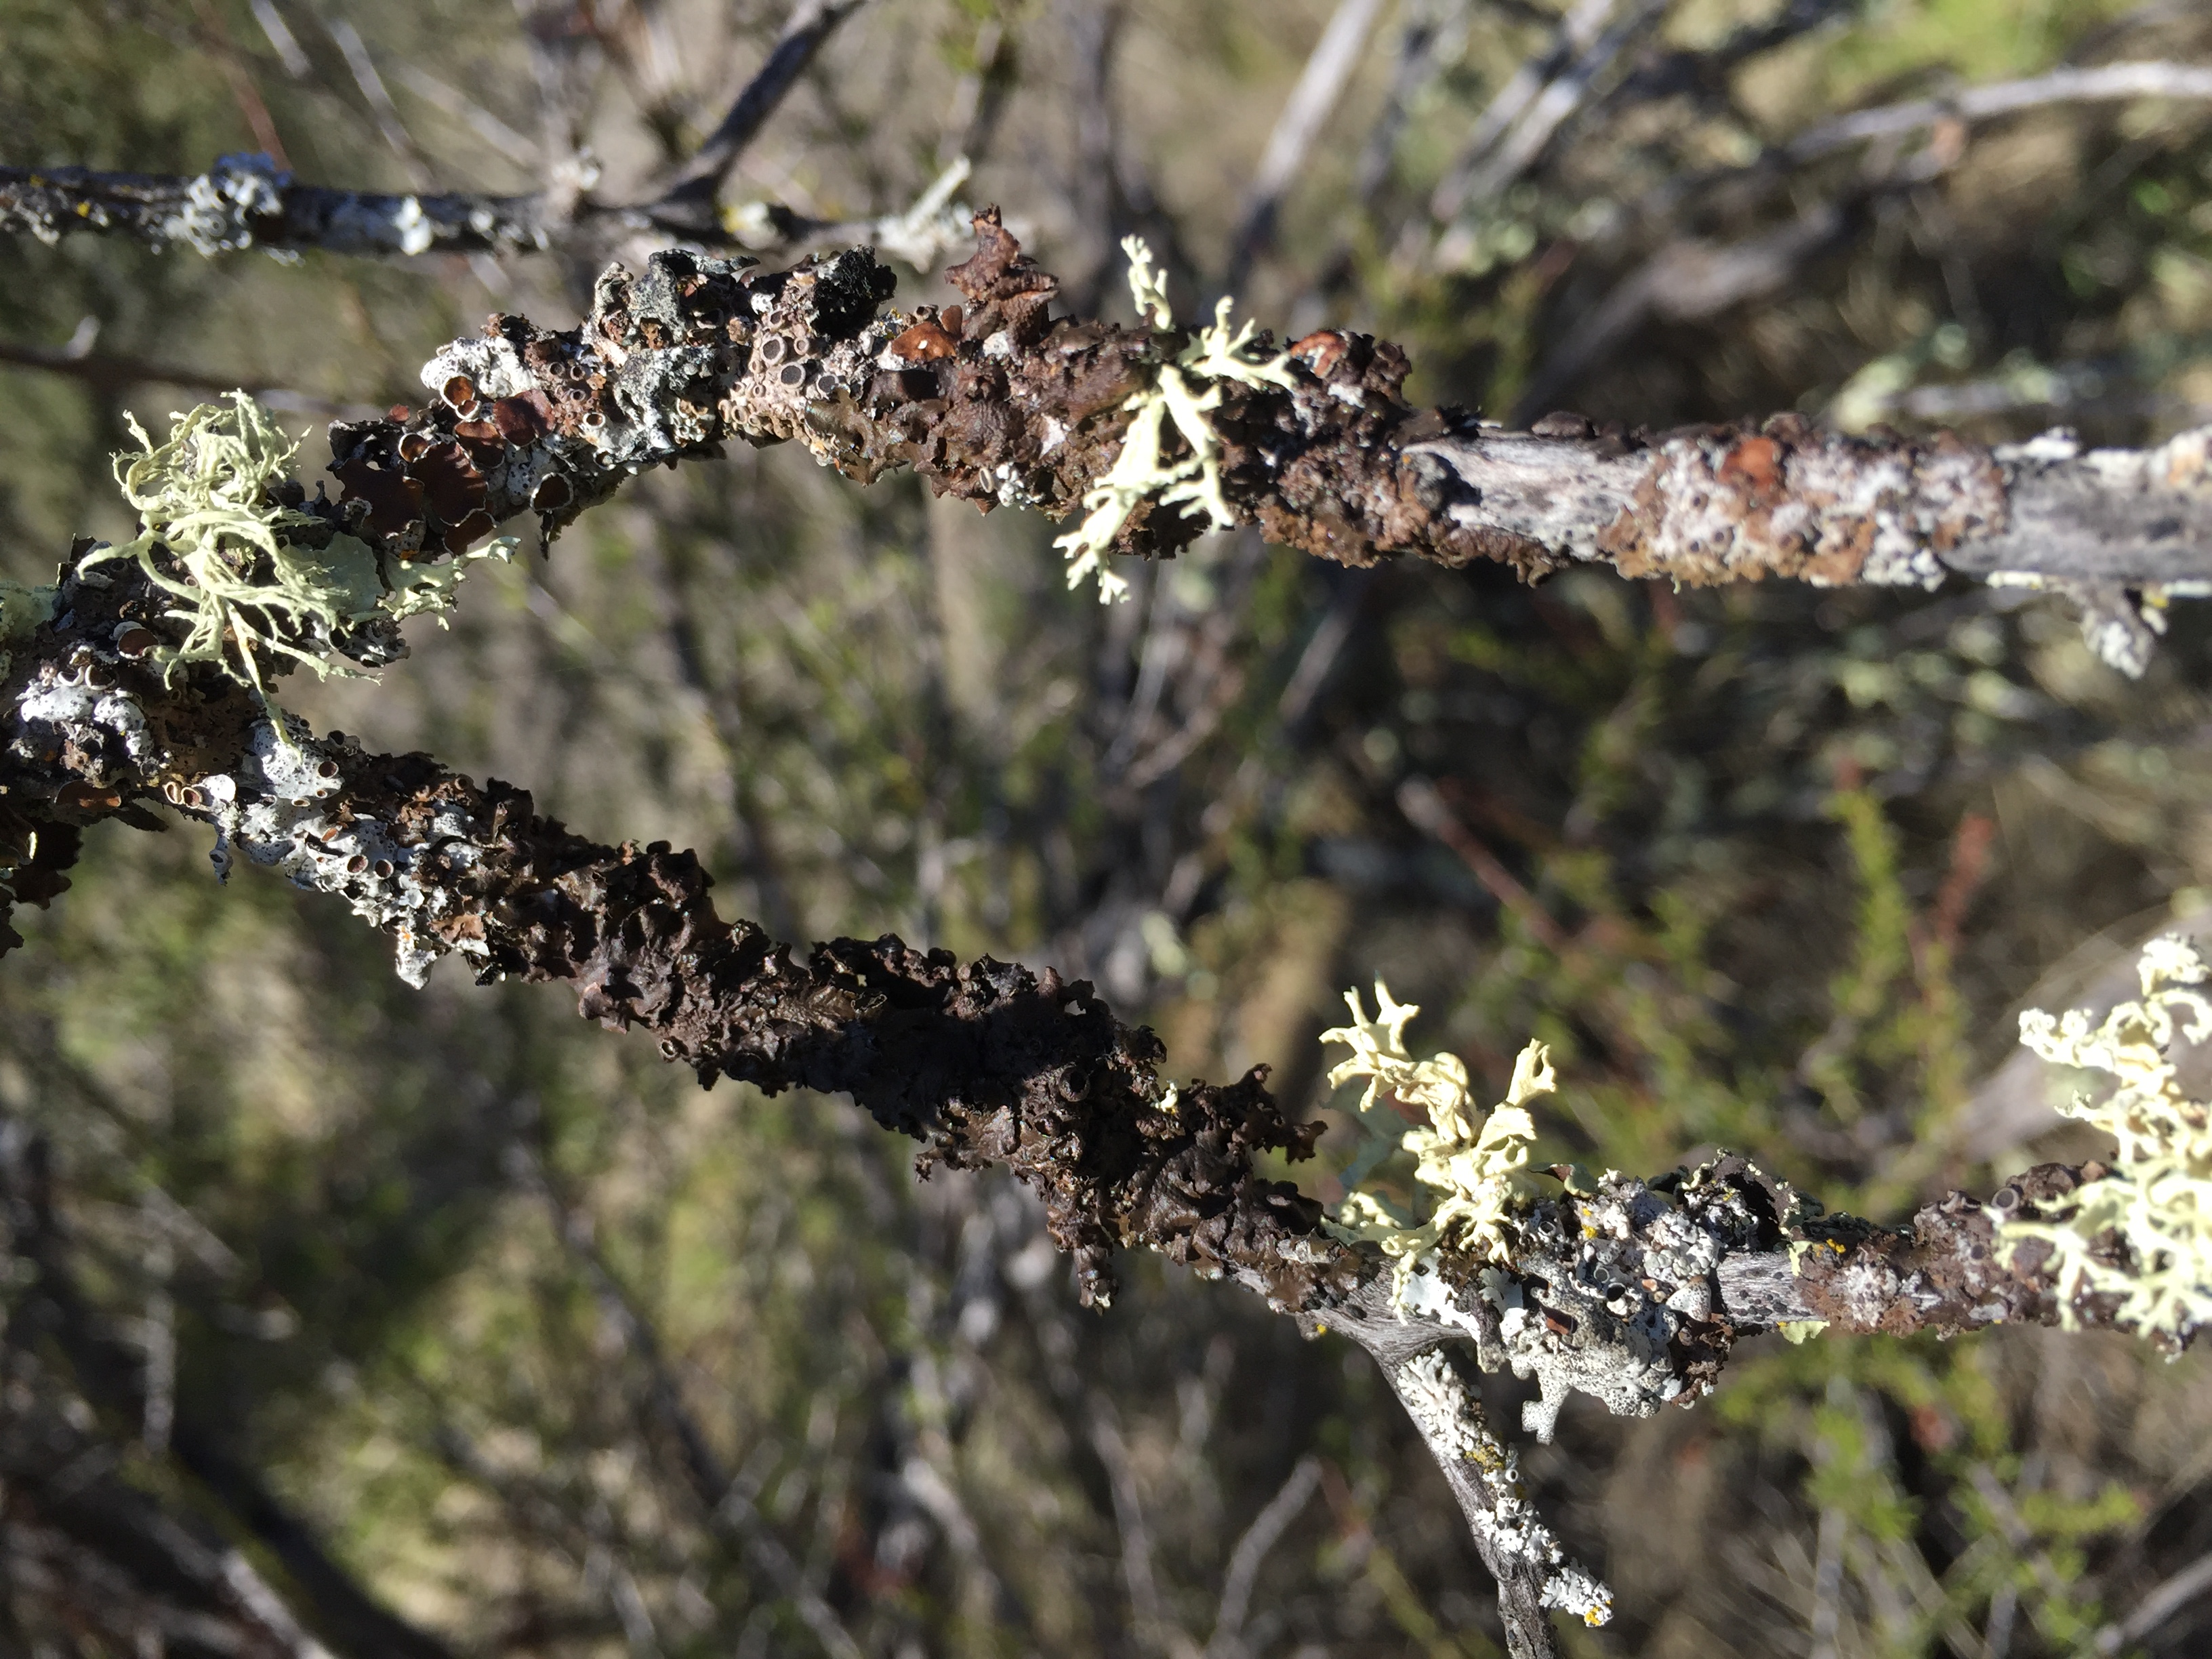 lichen attached to tree branch